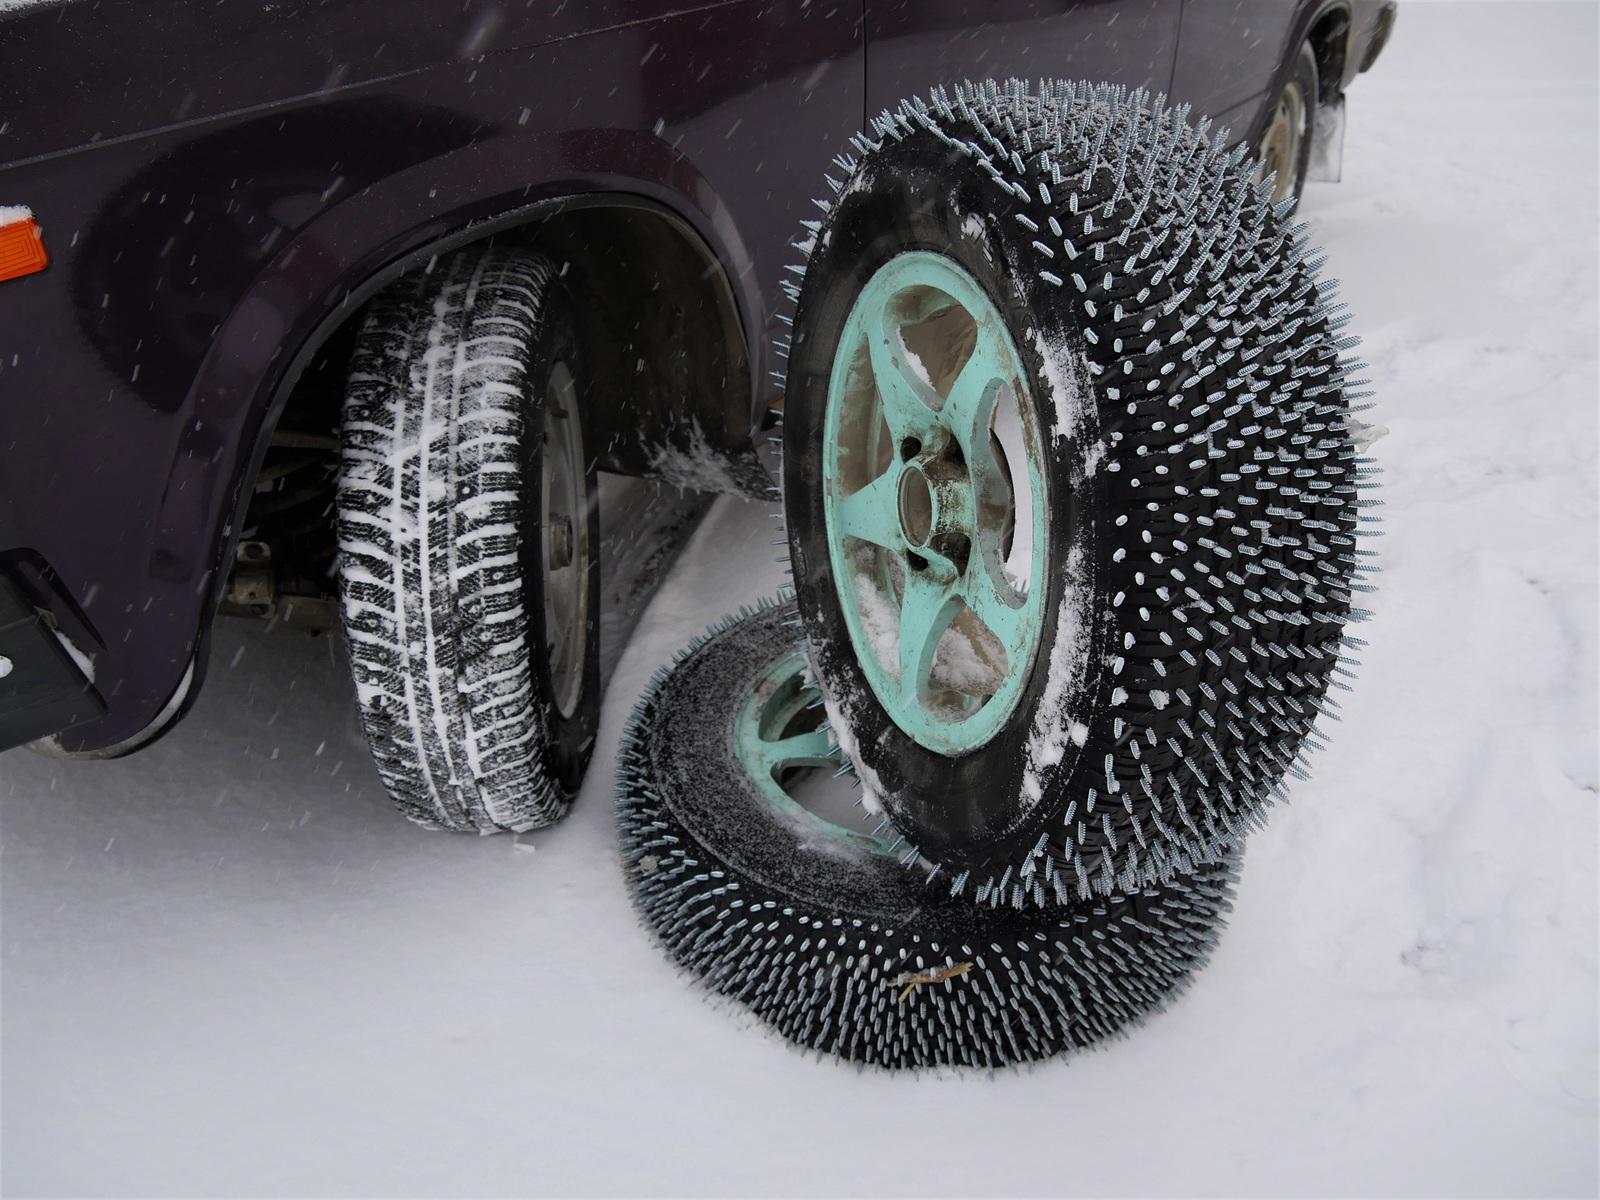 Mitkä renkaat ovat parempia talvirenkaita: cordiant vai hankuk